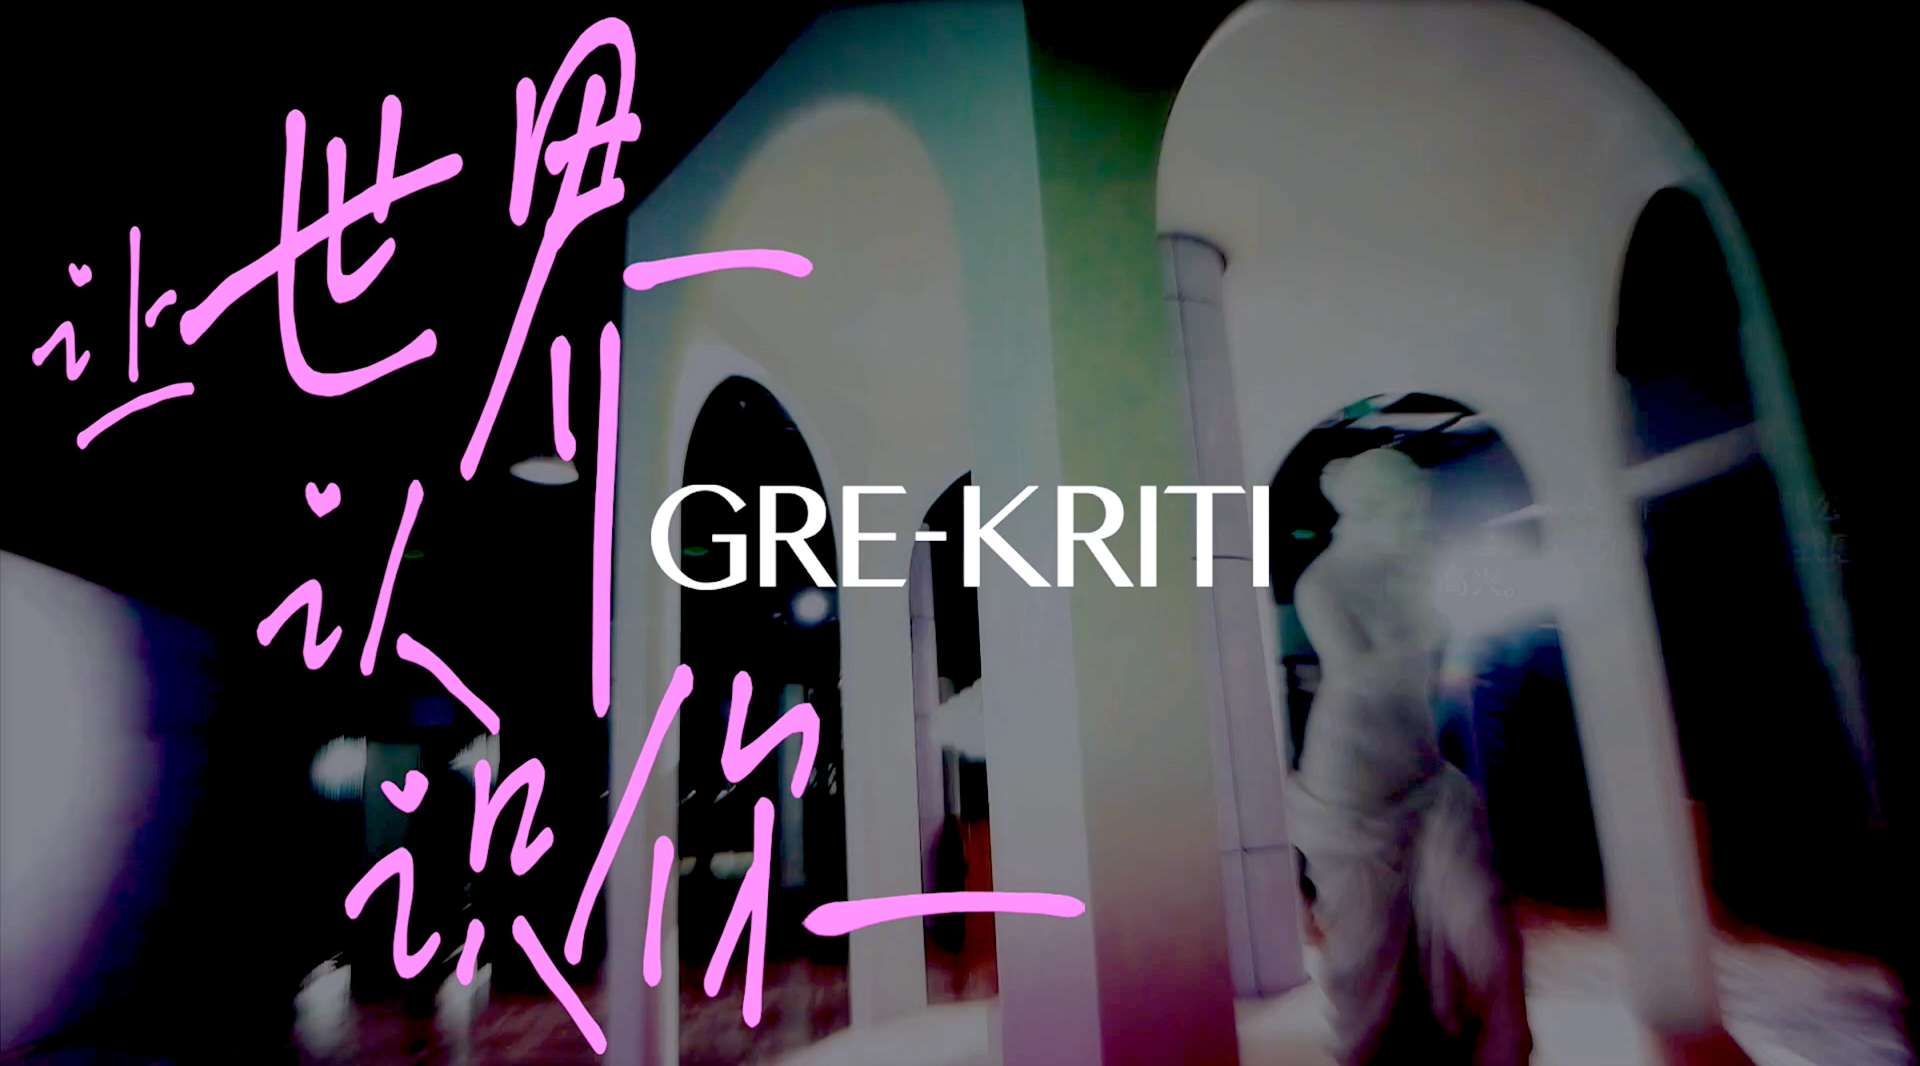 《让世界认识你》GRE-KRITI格丽缇#艺述·卢浮#2020新品发布会